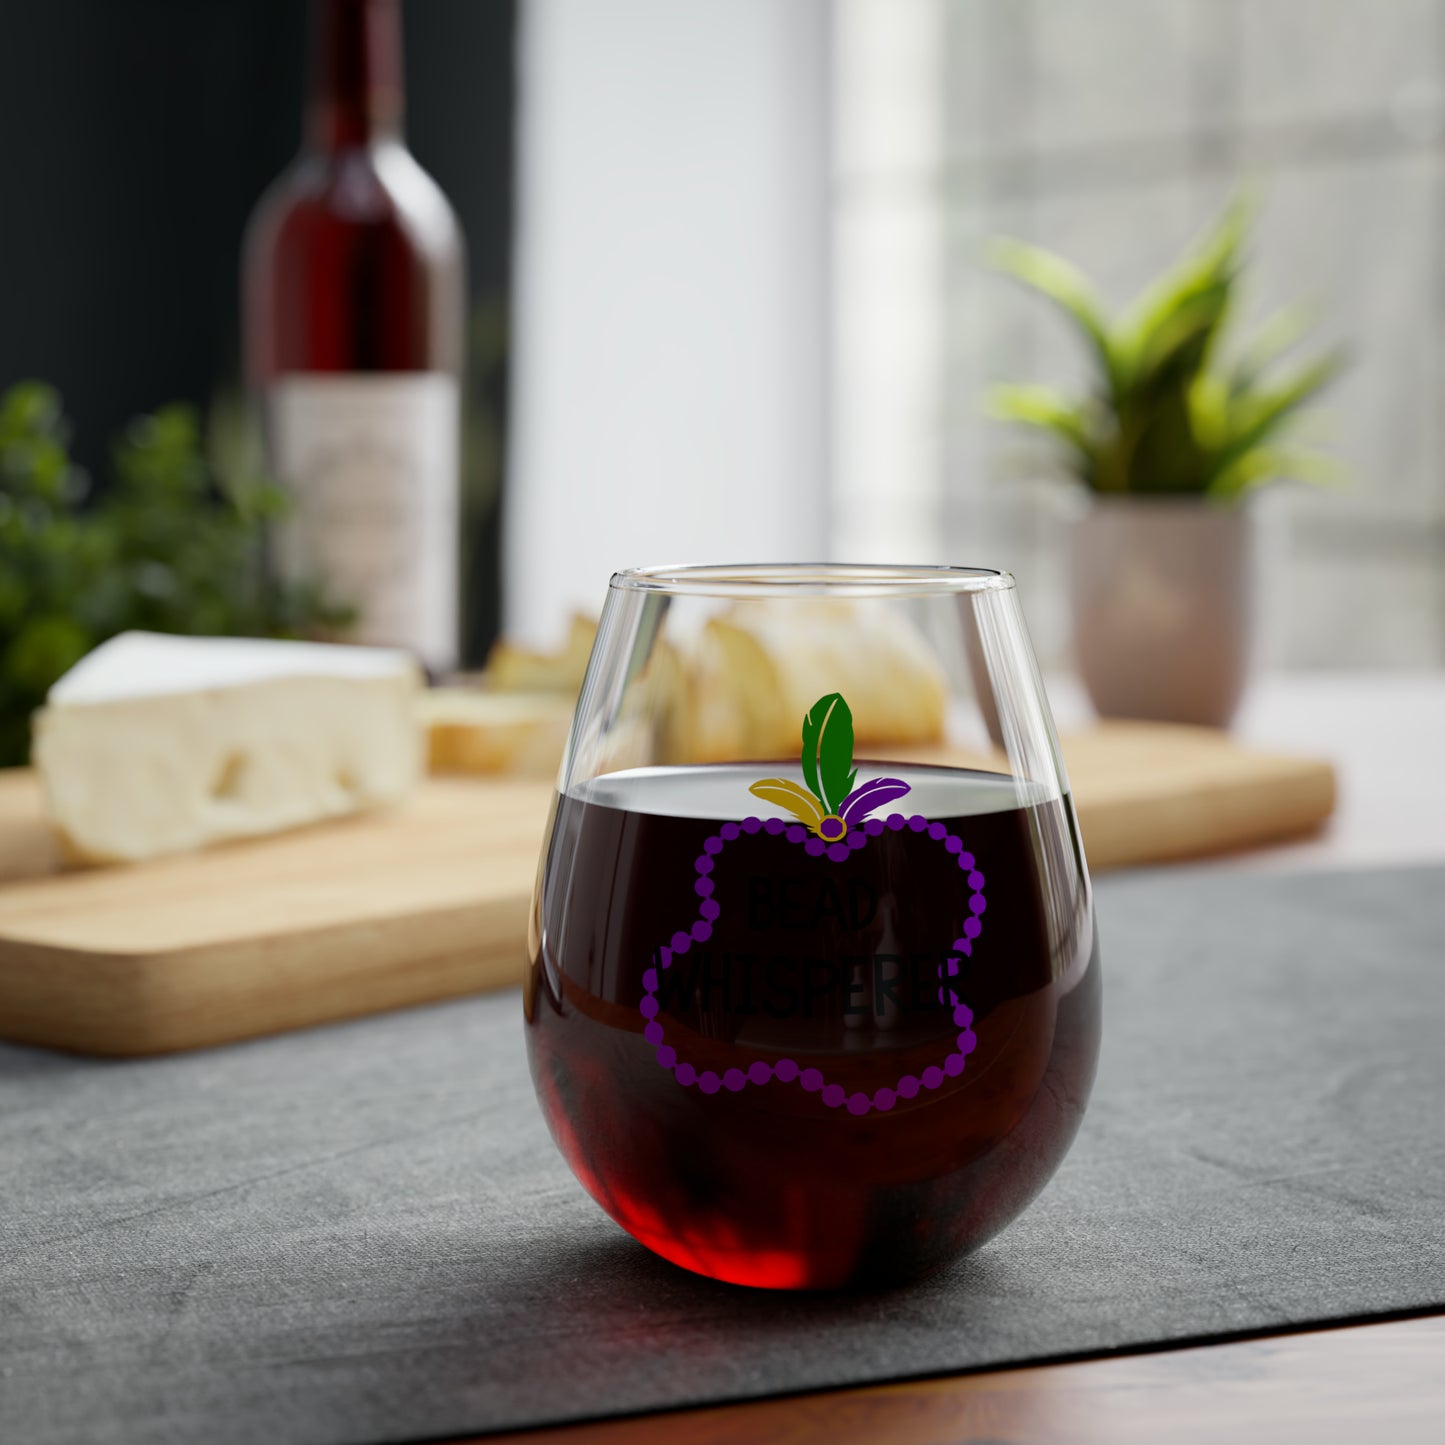 Bead Whisperer Stemless Wine Glass, 11.75oz